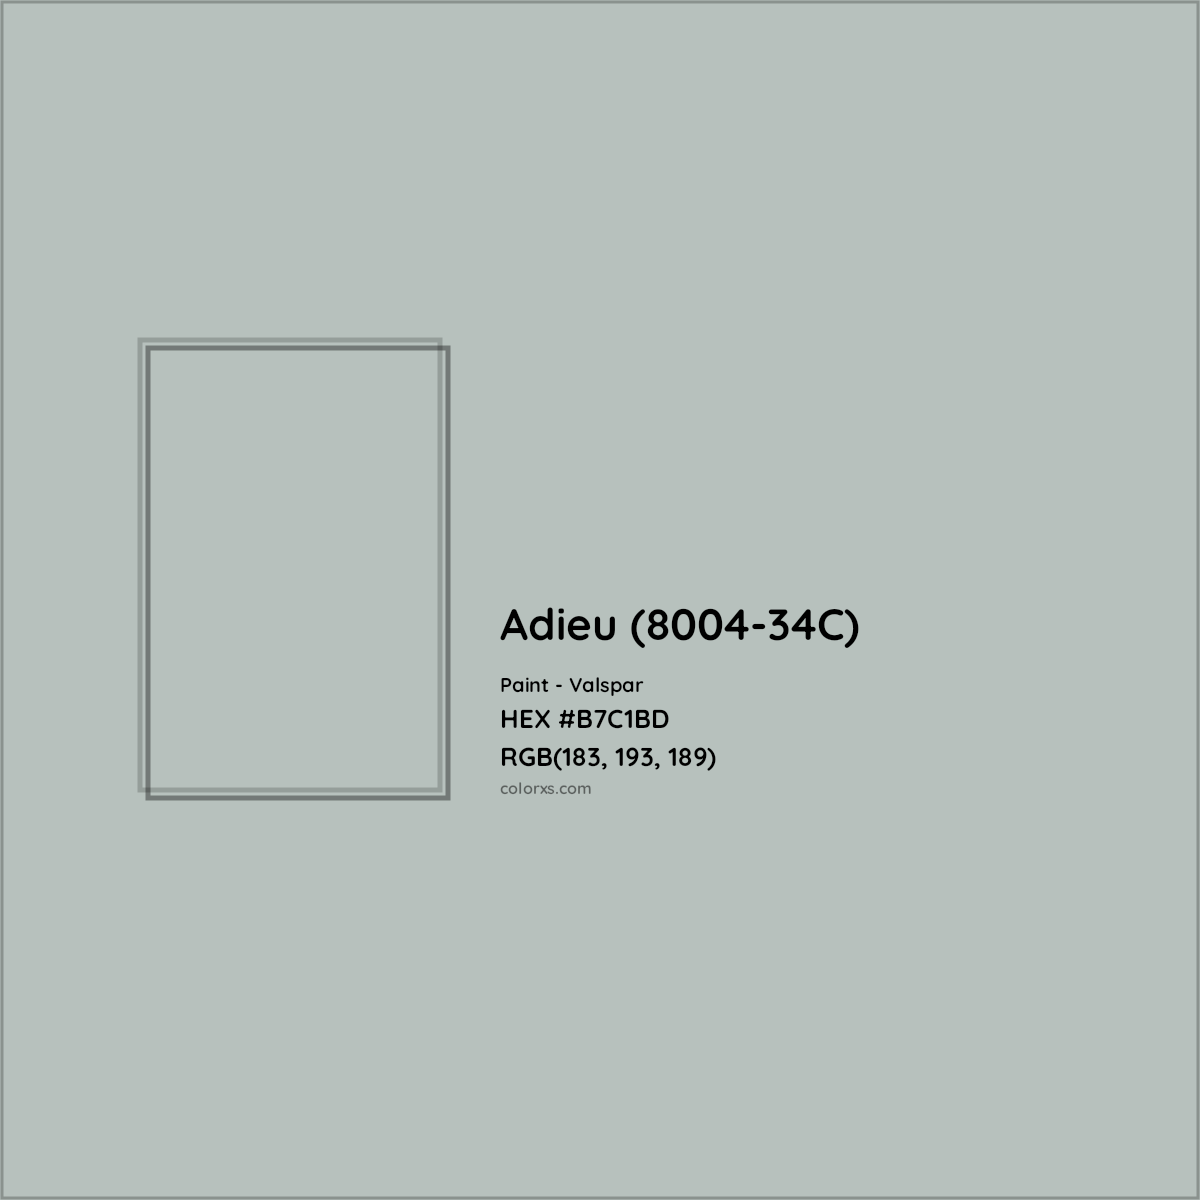 HEX #B7C1BD Adieu (8004-34C) Paint Valspar - Color Code